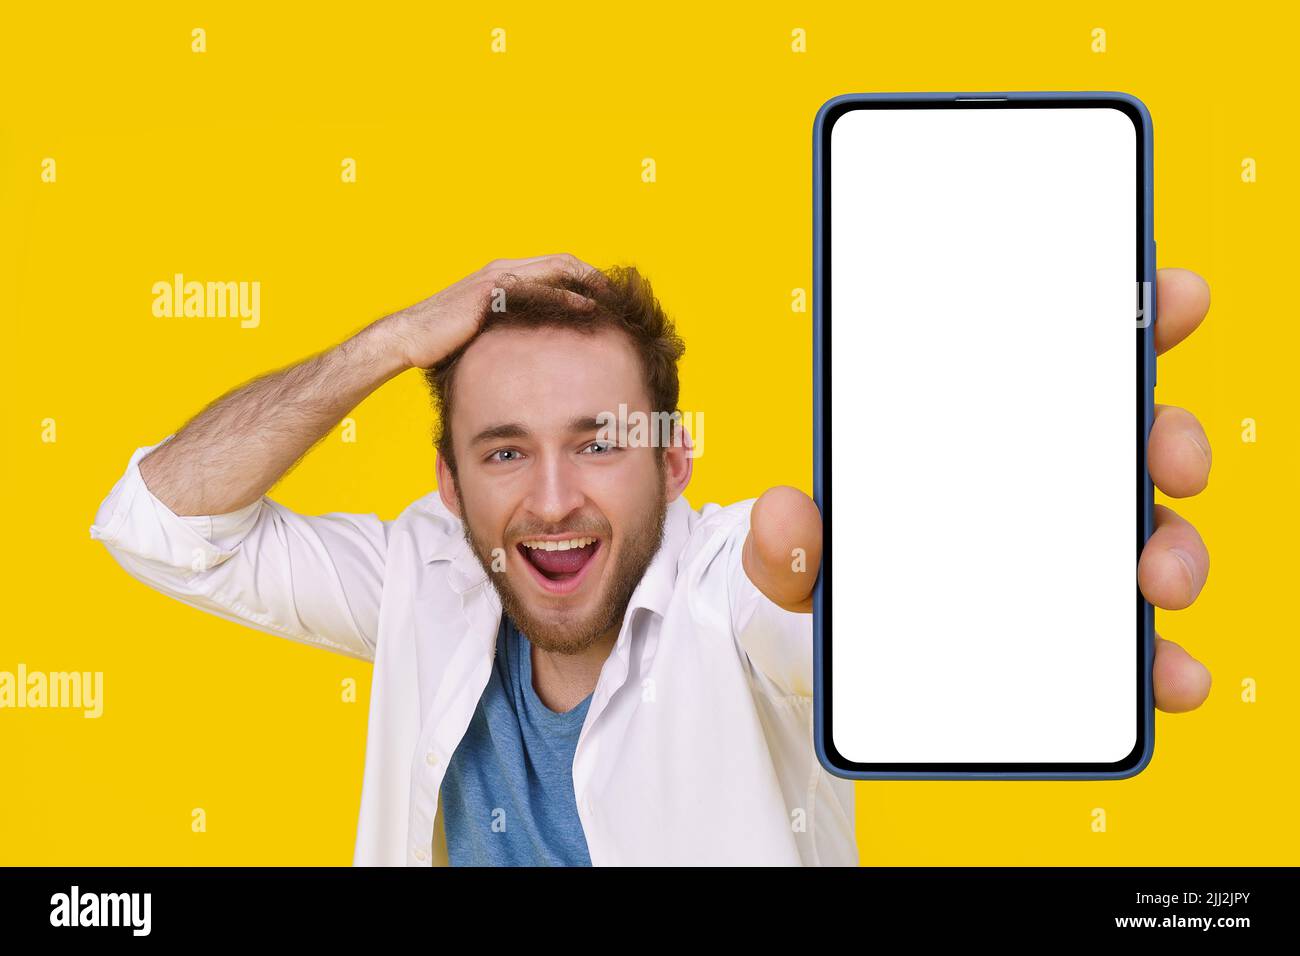 Bel giovane eccitato emozionalmente sorridendo toccando la testa mostrando un enorme smartphone con schermo bianco. Posizionamento dei prodotti per la pubblicità tramite app mobile. Giovane con telefono. Foto Stock